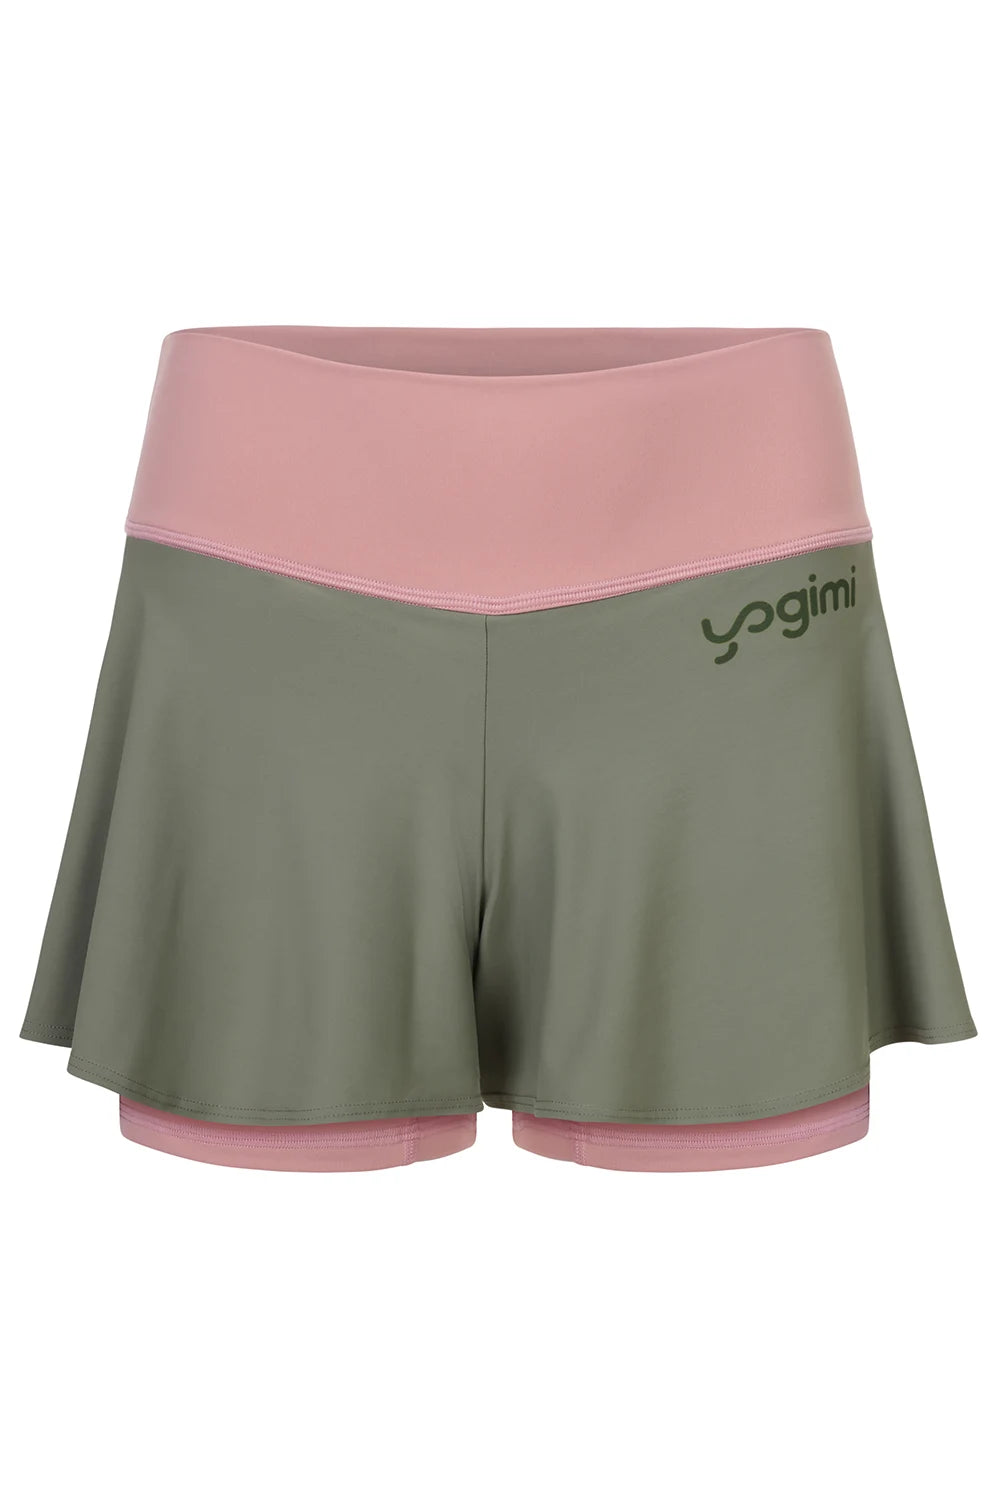 Silueta de Shorts de yoga de Yogimi en color rosa con capa verde. Modelo Prana Mellow Rose-Green